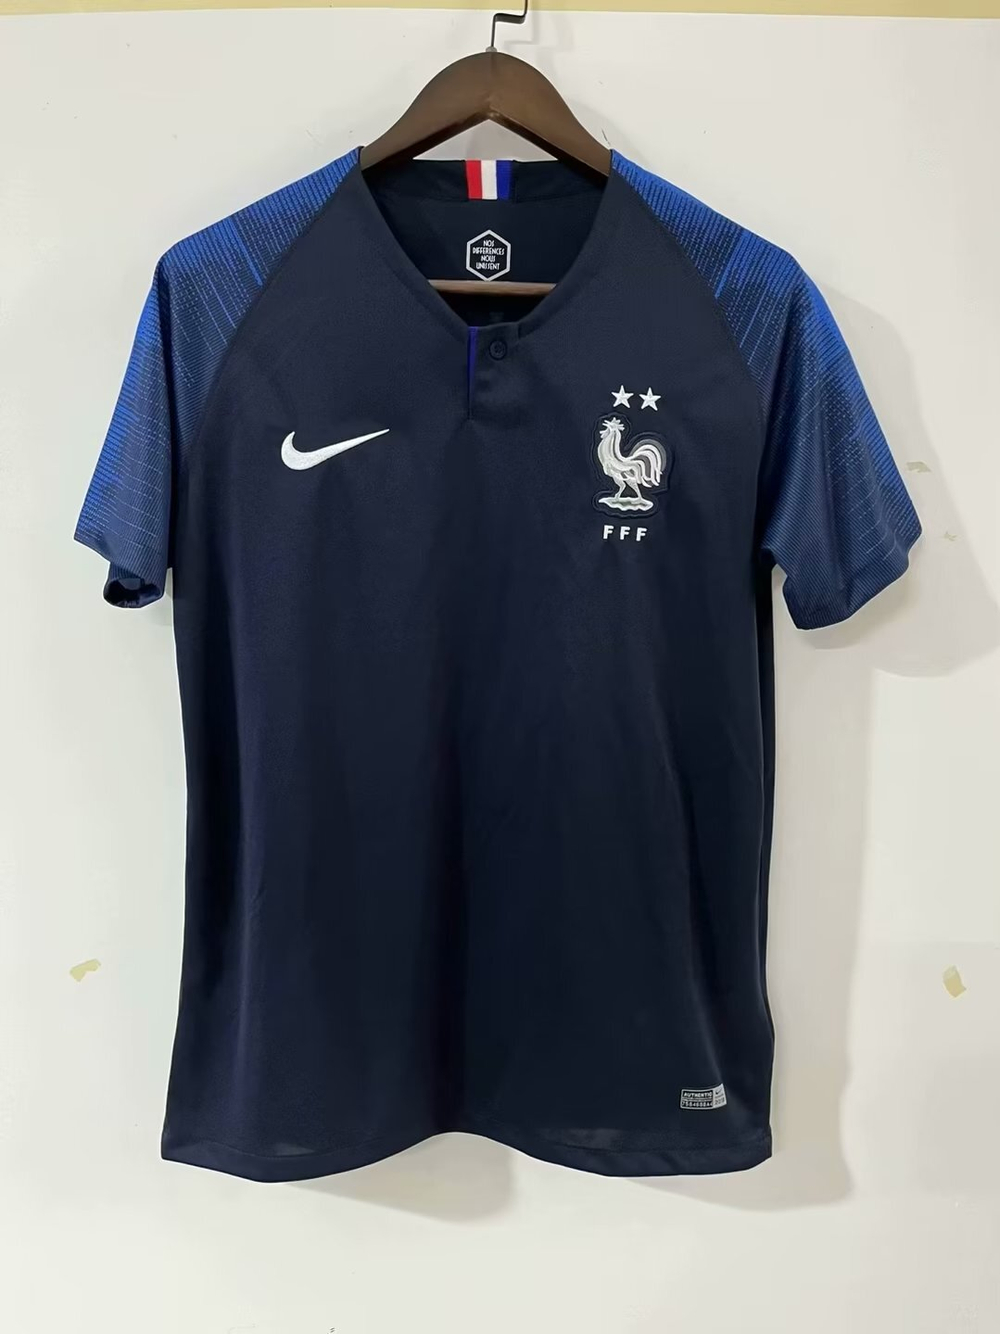 Купить домашнюю ретро форму с длинными рукавами сборной Франции 2018